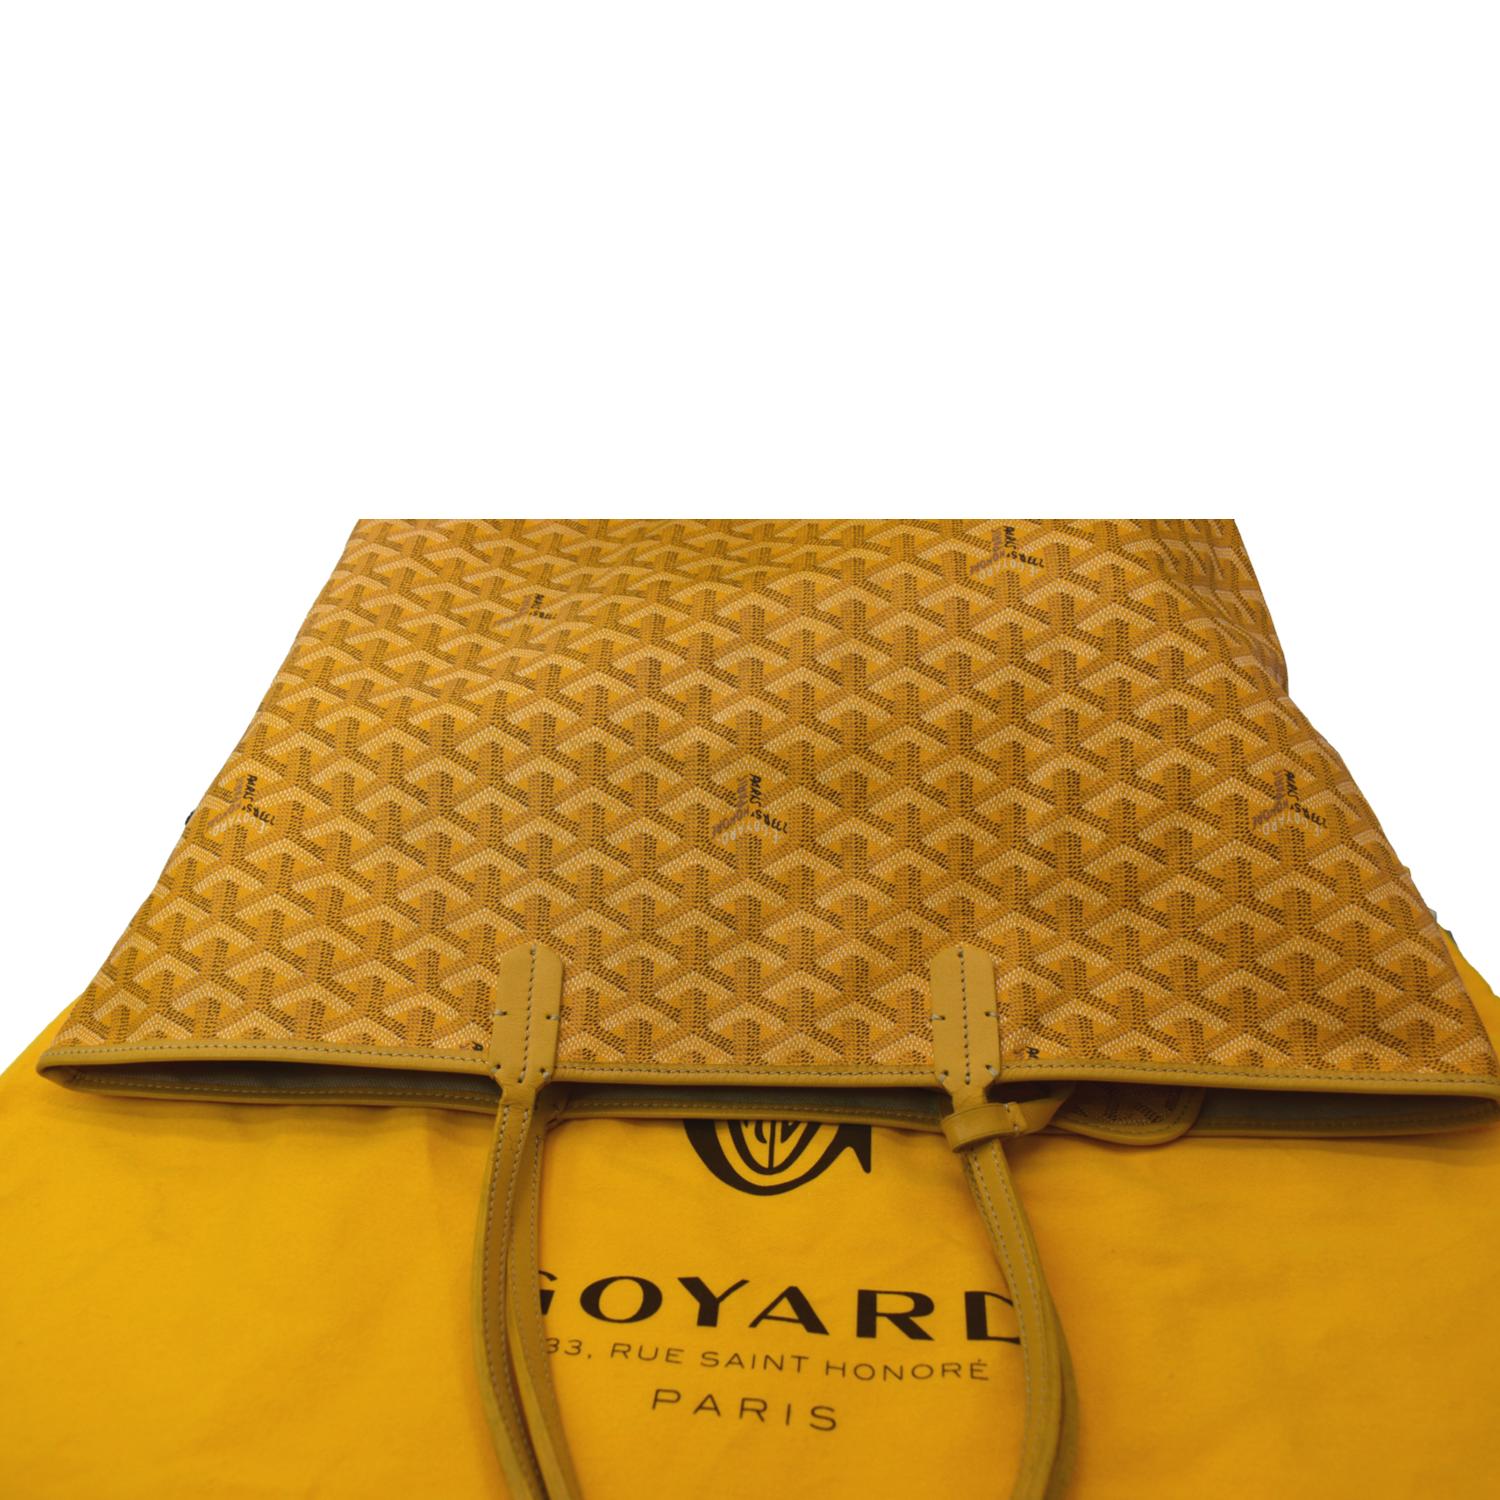 goyard tote bag yellow